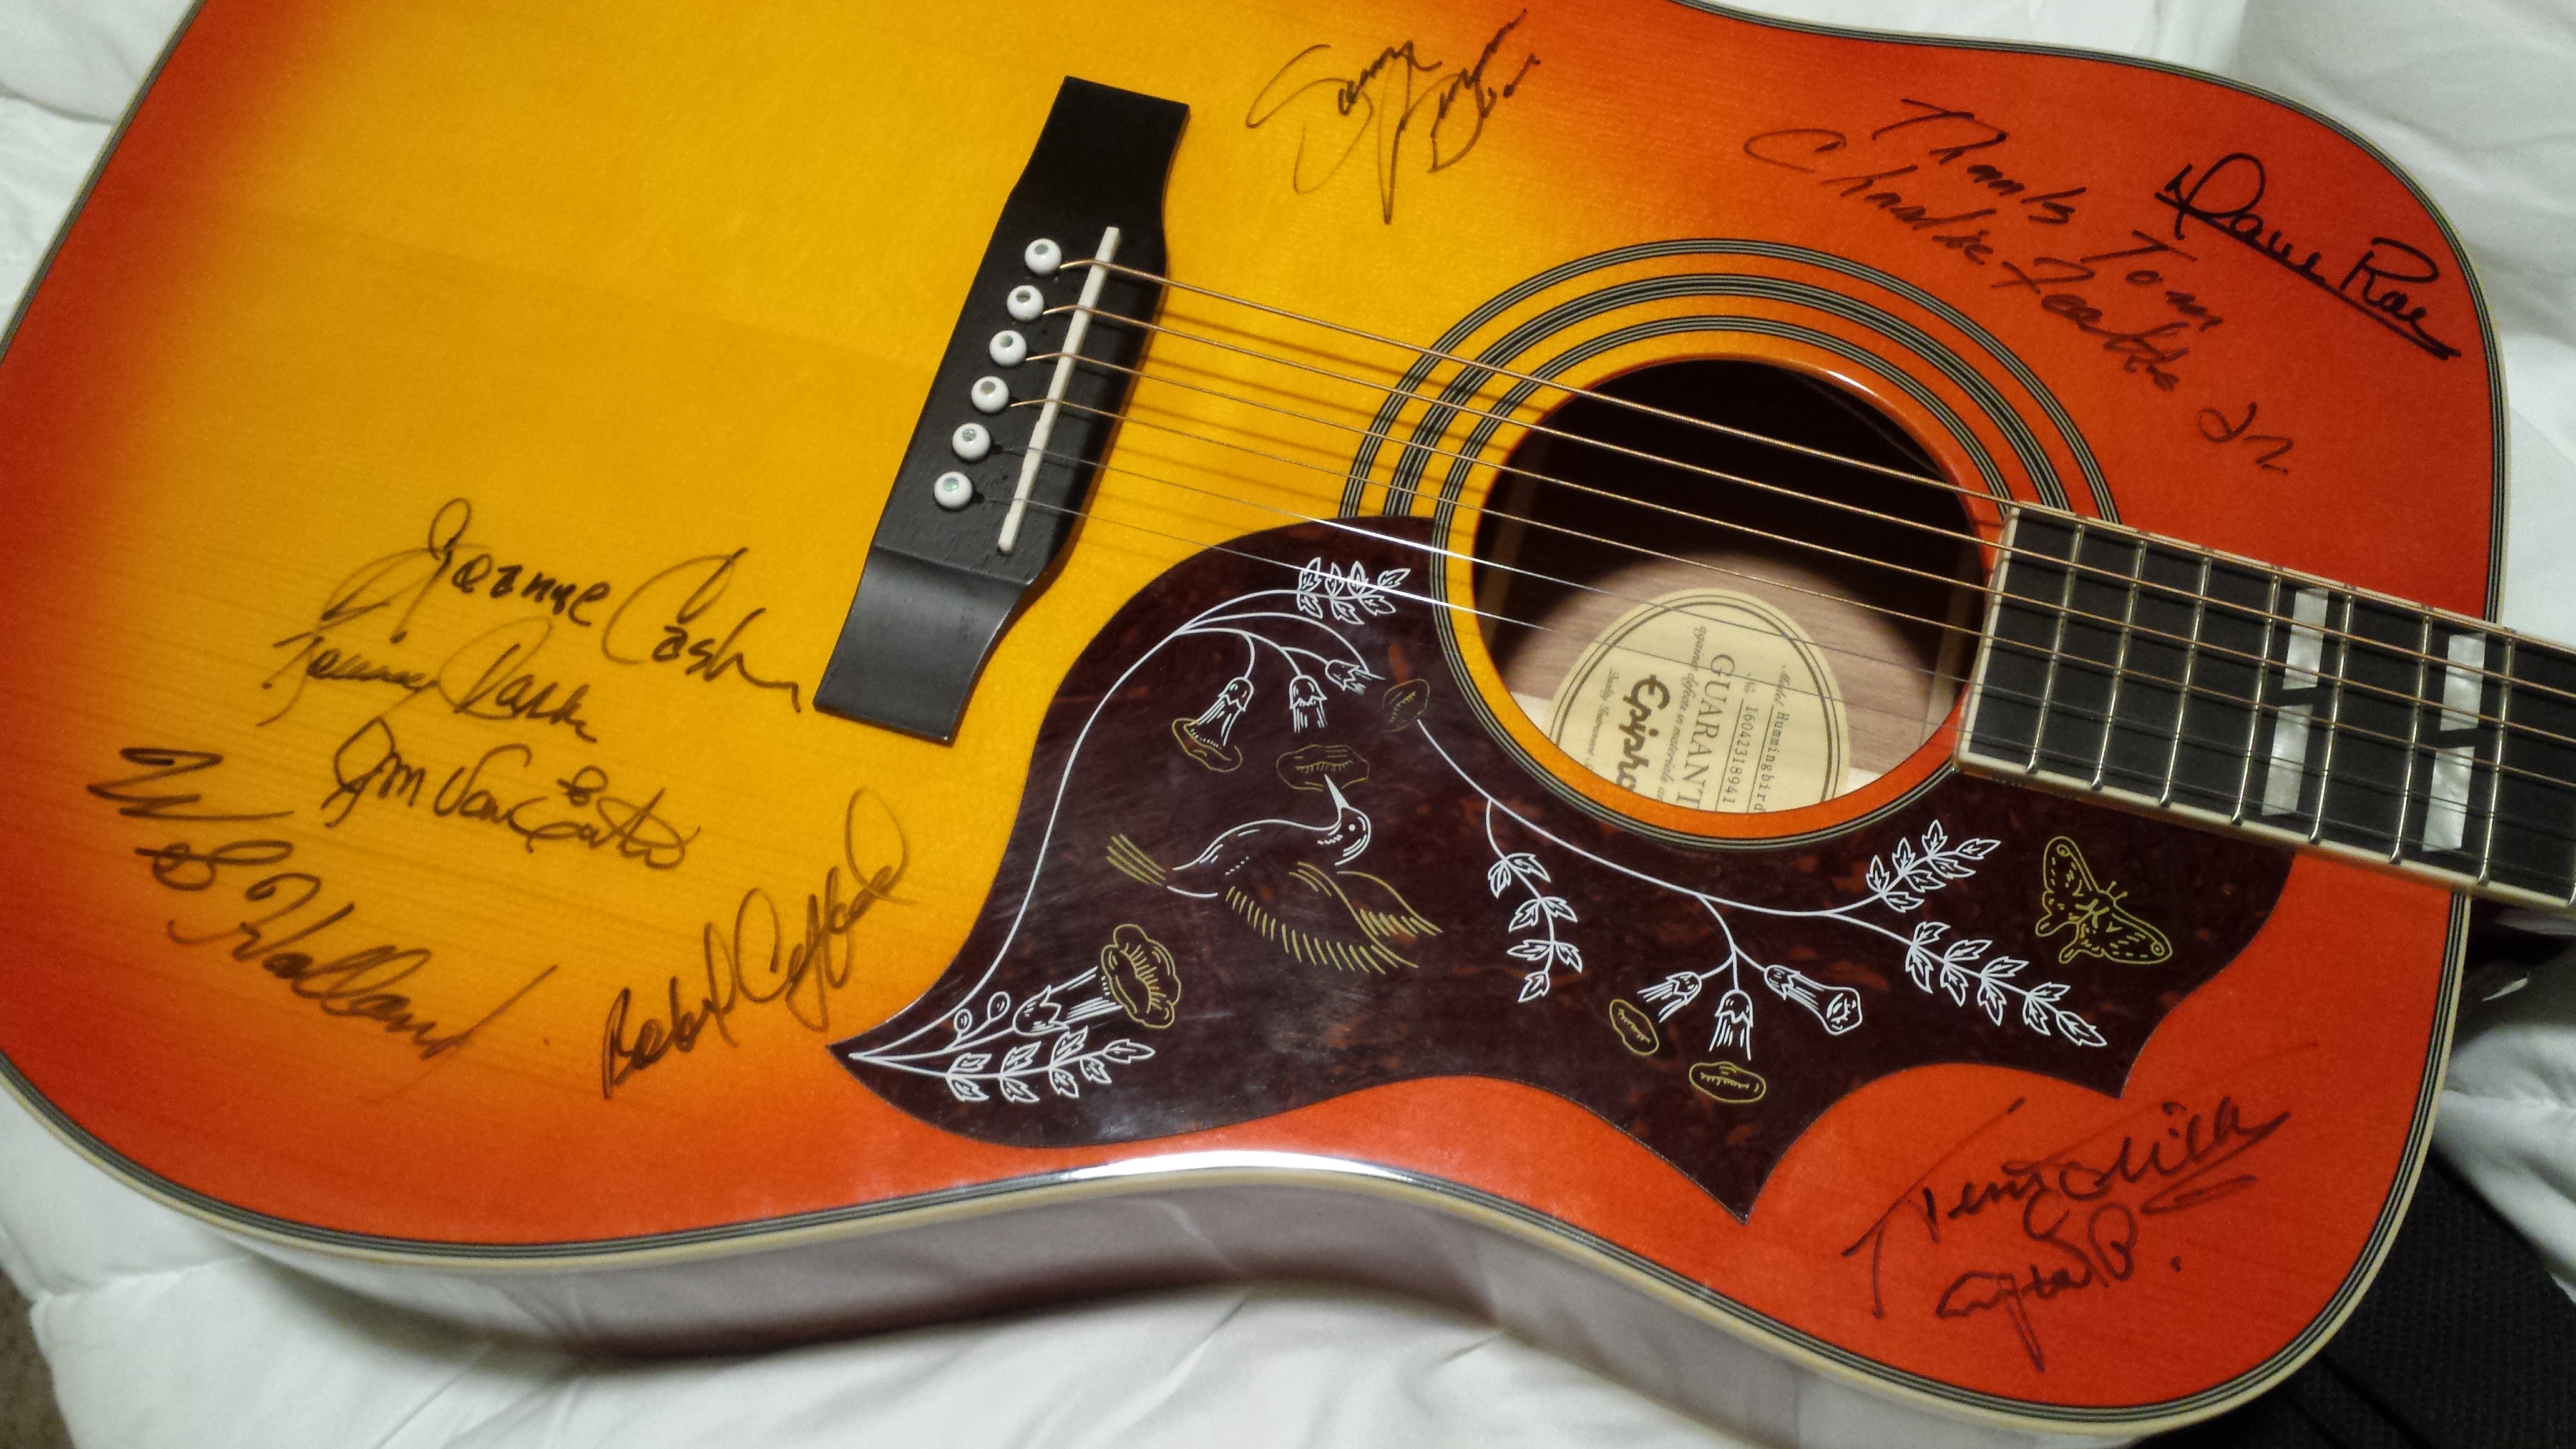 Meine Gitarre, auf der alle Musiker sowie der Sohn von Sam Phillips und auch Tommy und Joanne Cash unterschrieben haben